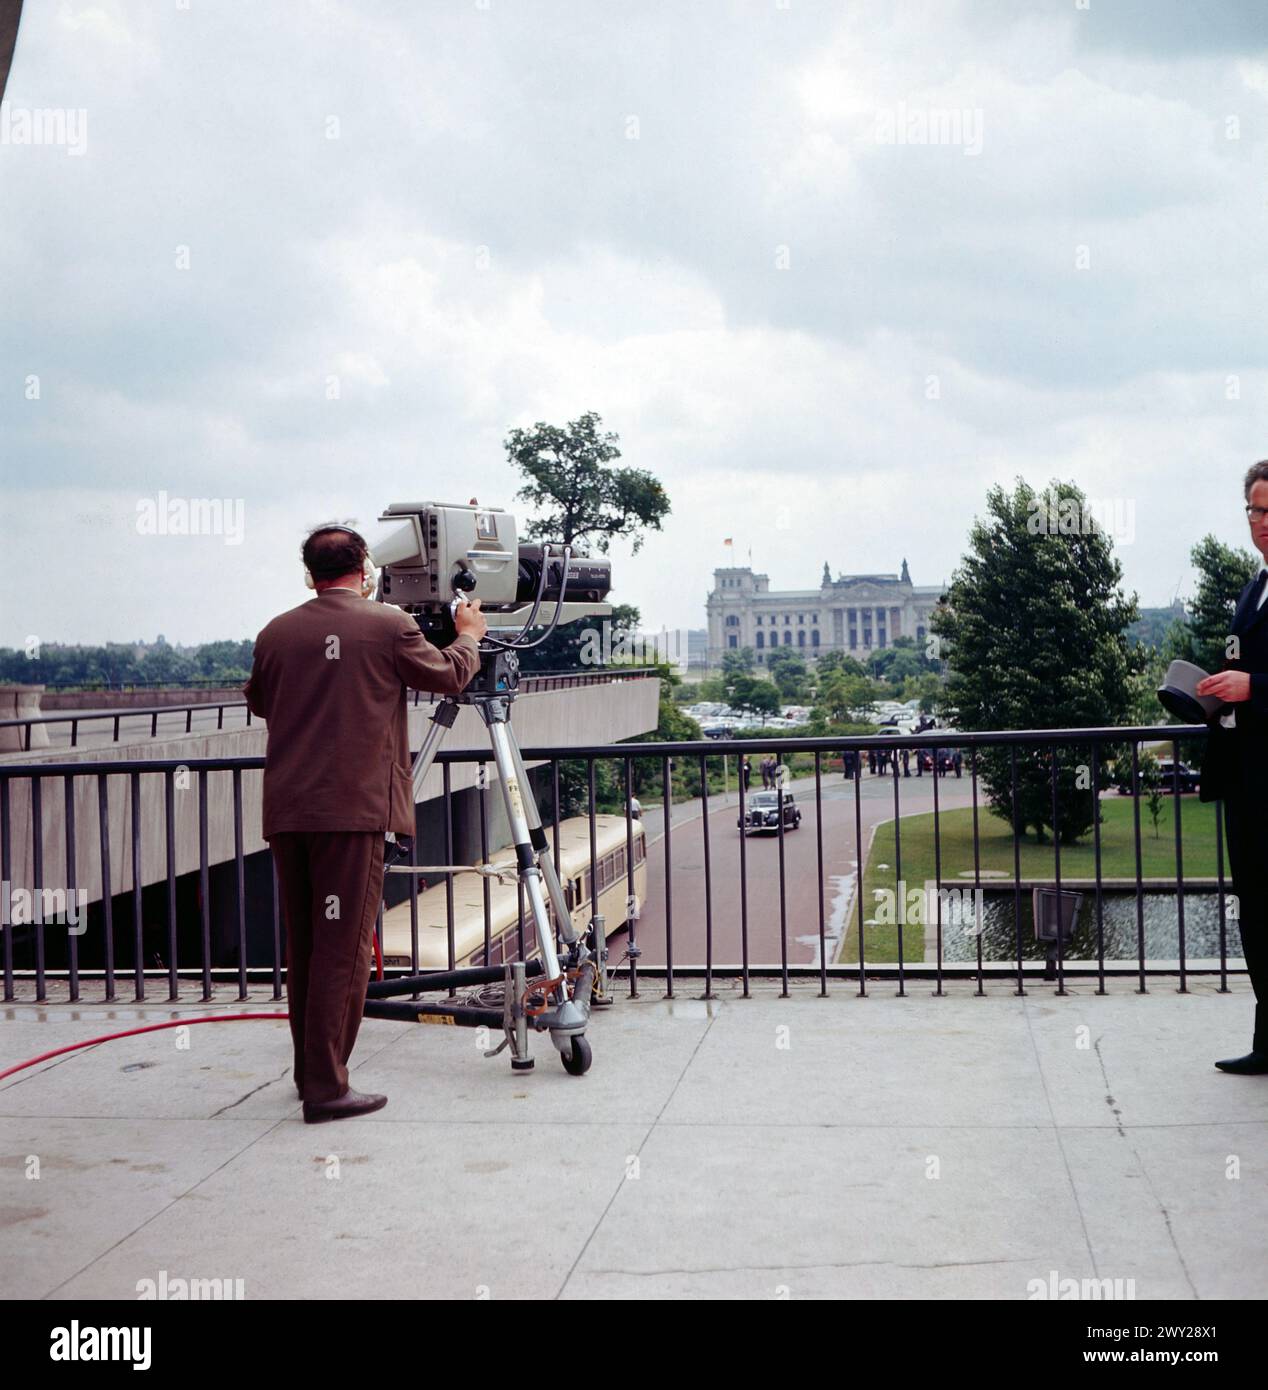 Anlass Besuch John F. Kennedy in Berlin - Sender Freies Berlin SFB - Fernsehkamera im Einsatz vor dem Haus der Künste mit Blick auf den Reichstag BEI US-Präsident Kennedys Besuch in Berlin, Deutschland 1963. Banque D'Images